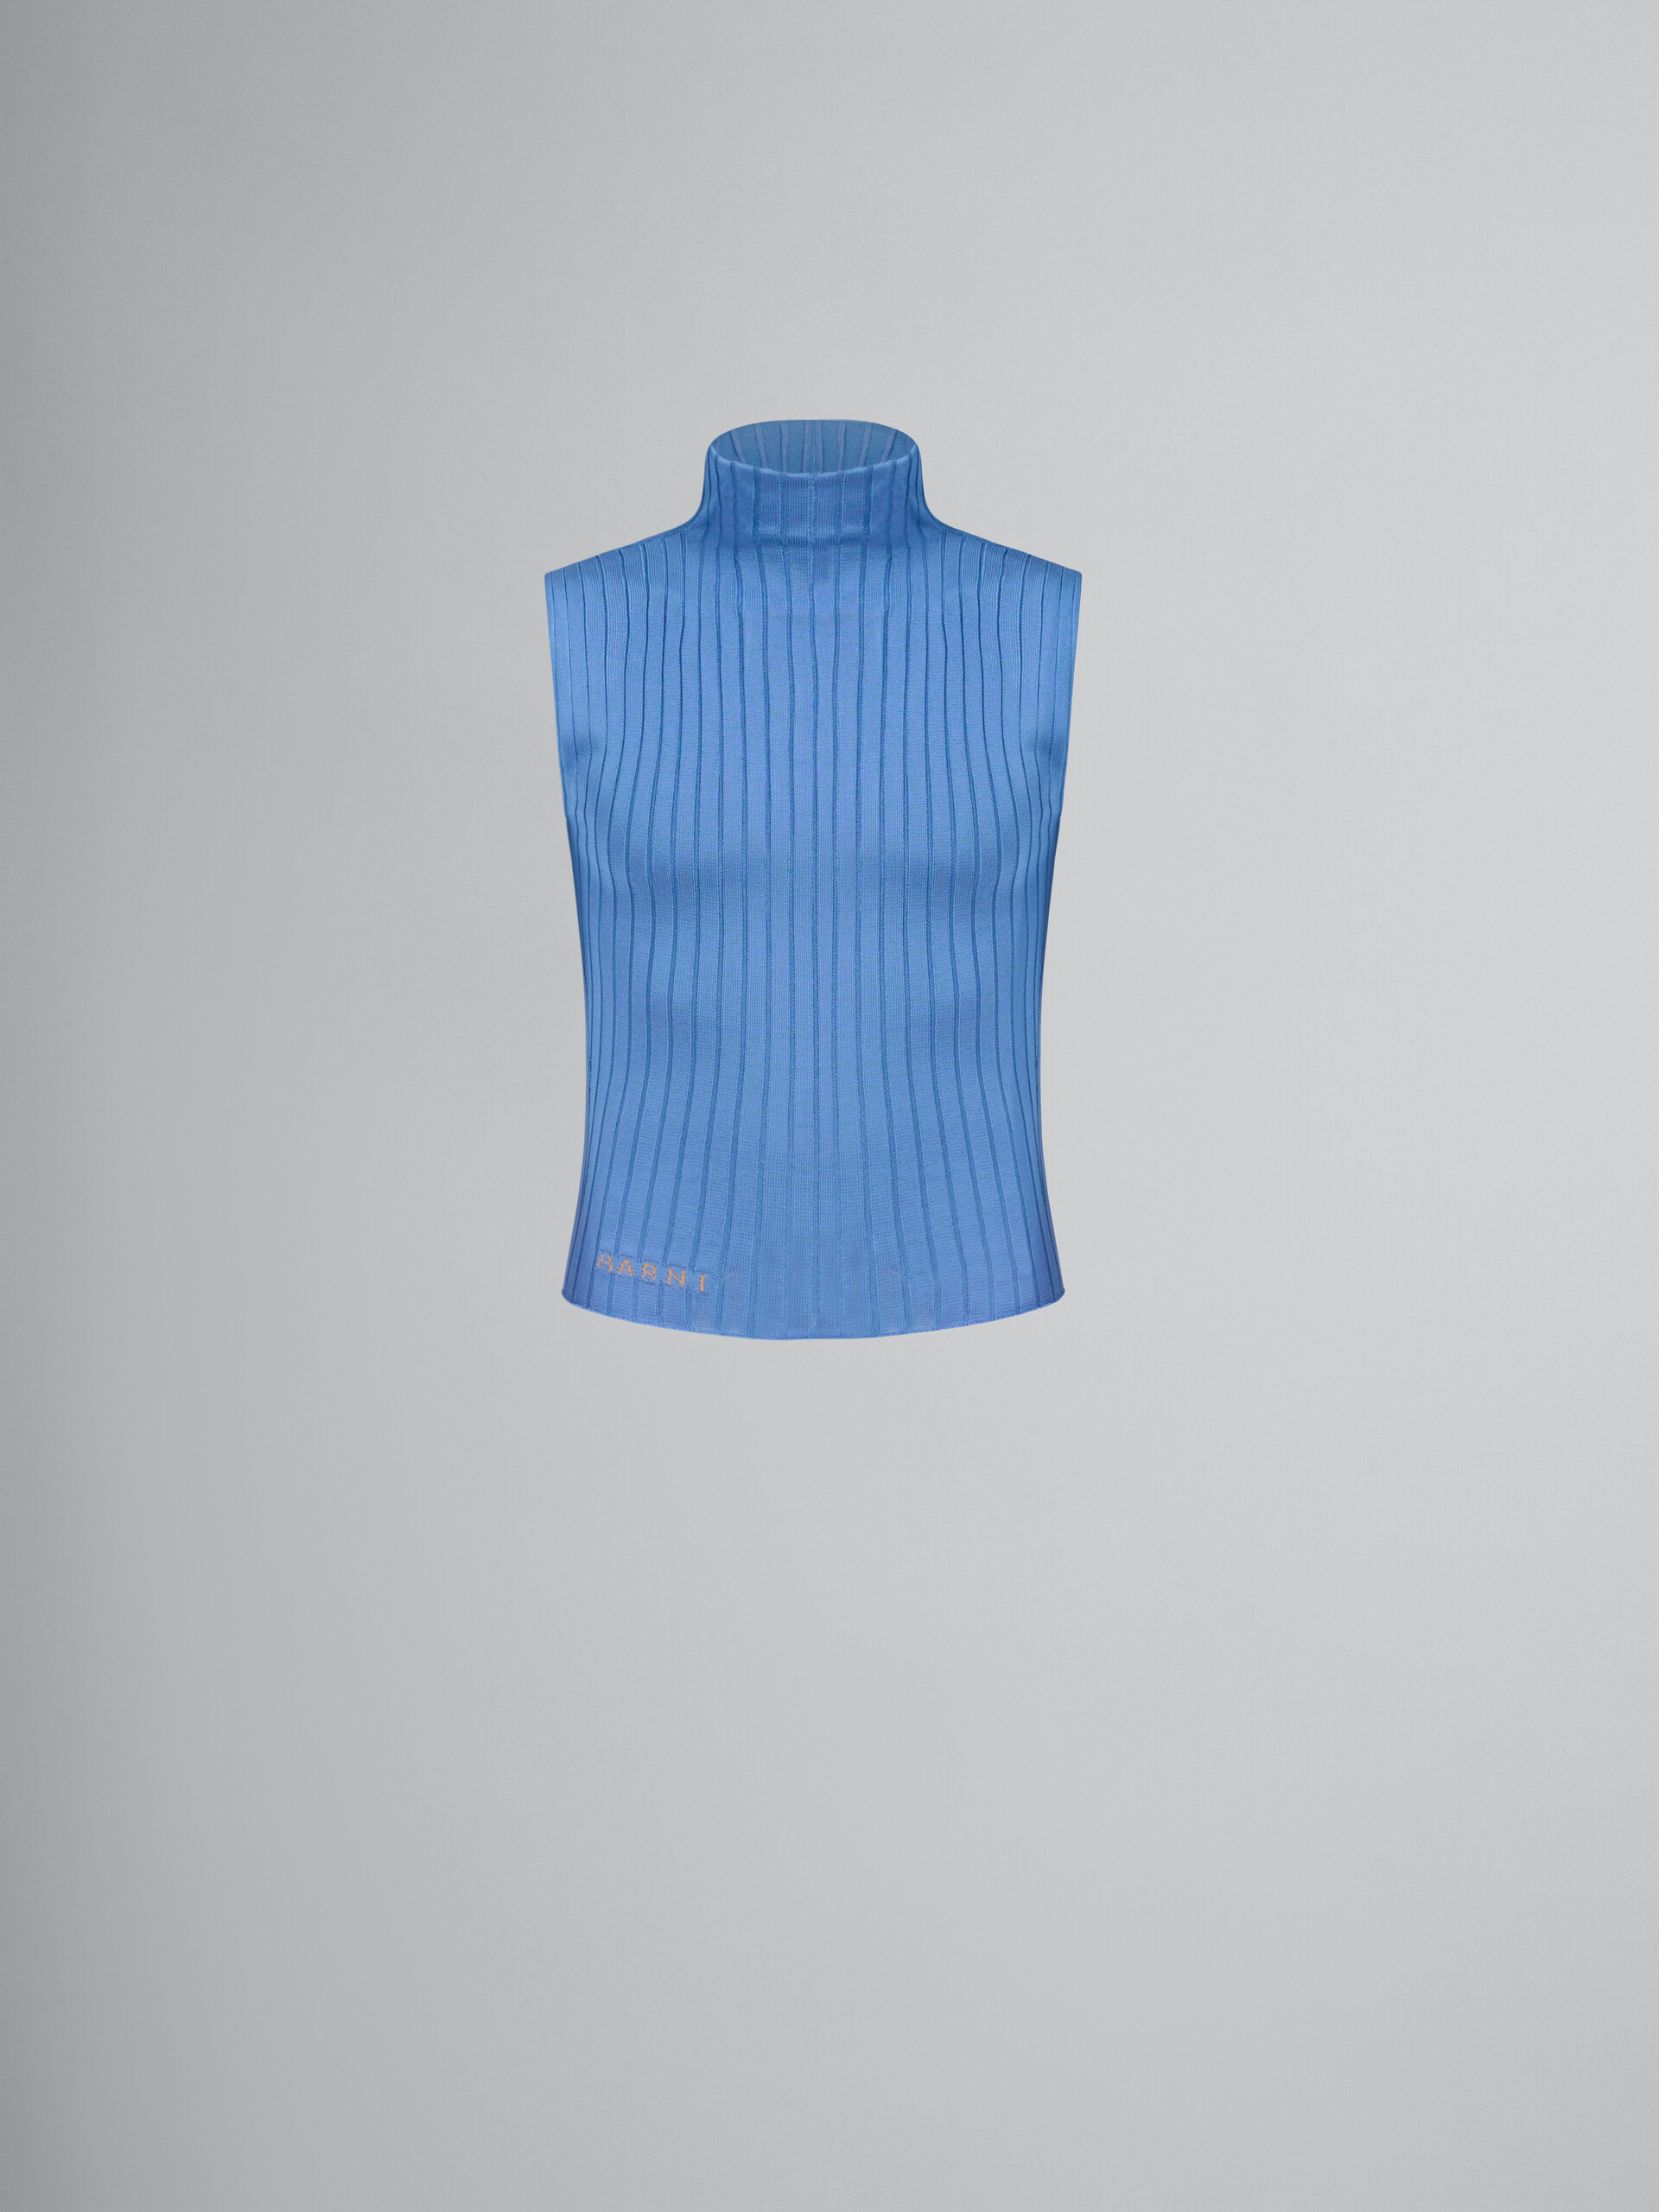 Chaleco azul de viscosa acanalada con cuello alto - jerseys - Image 1